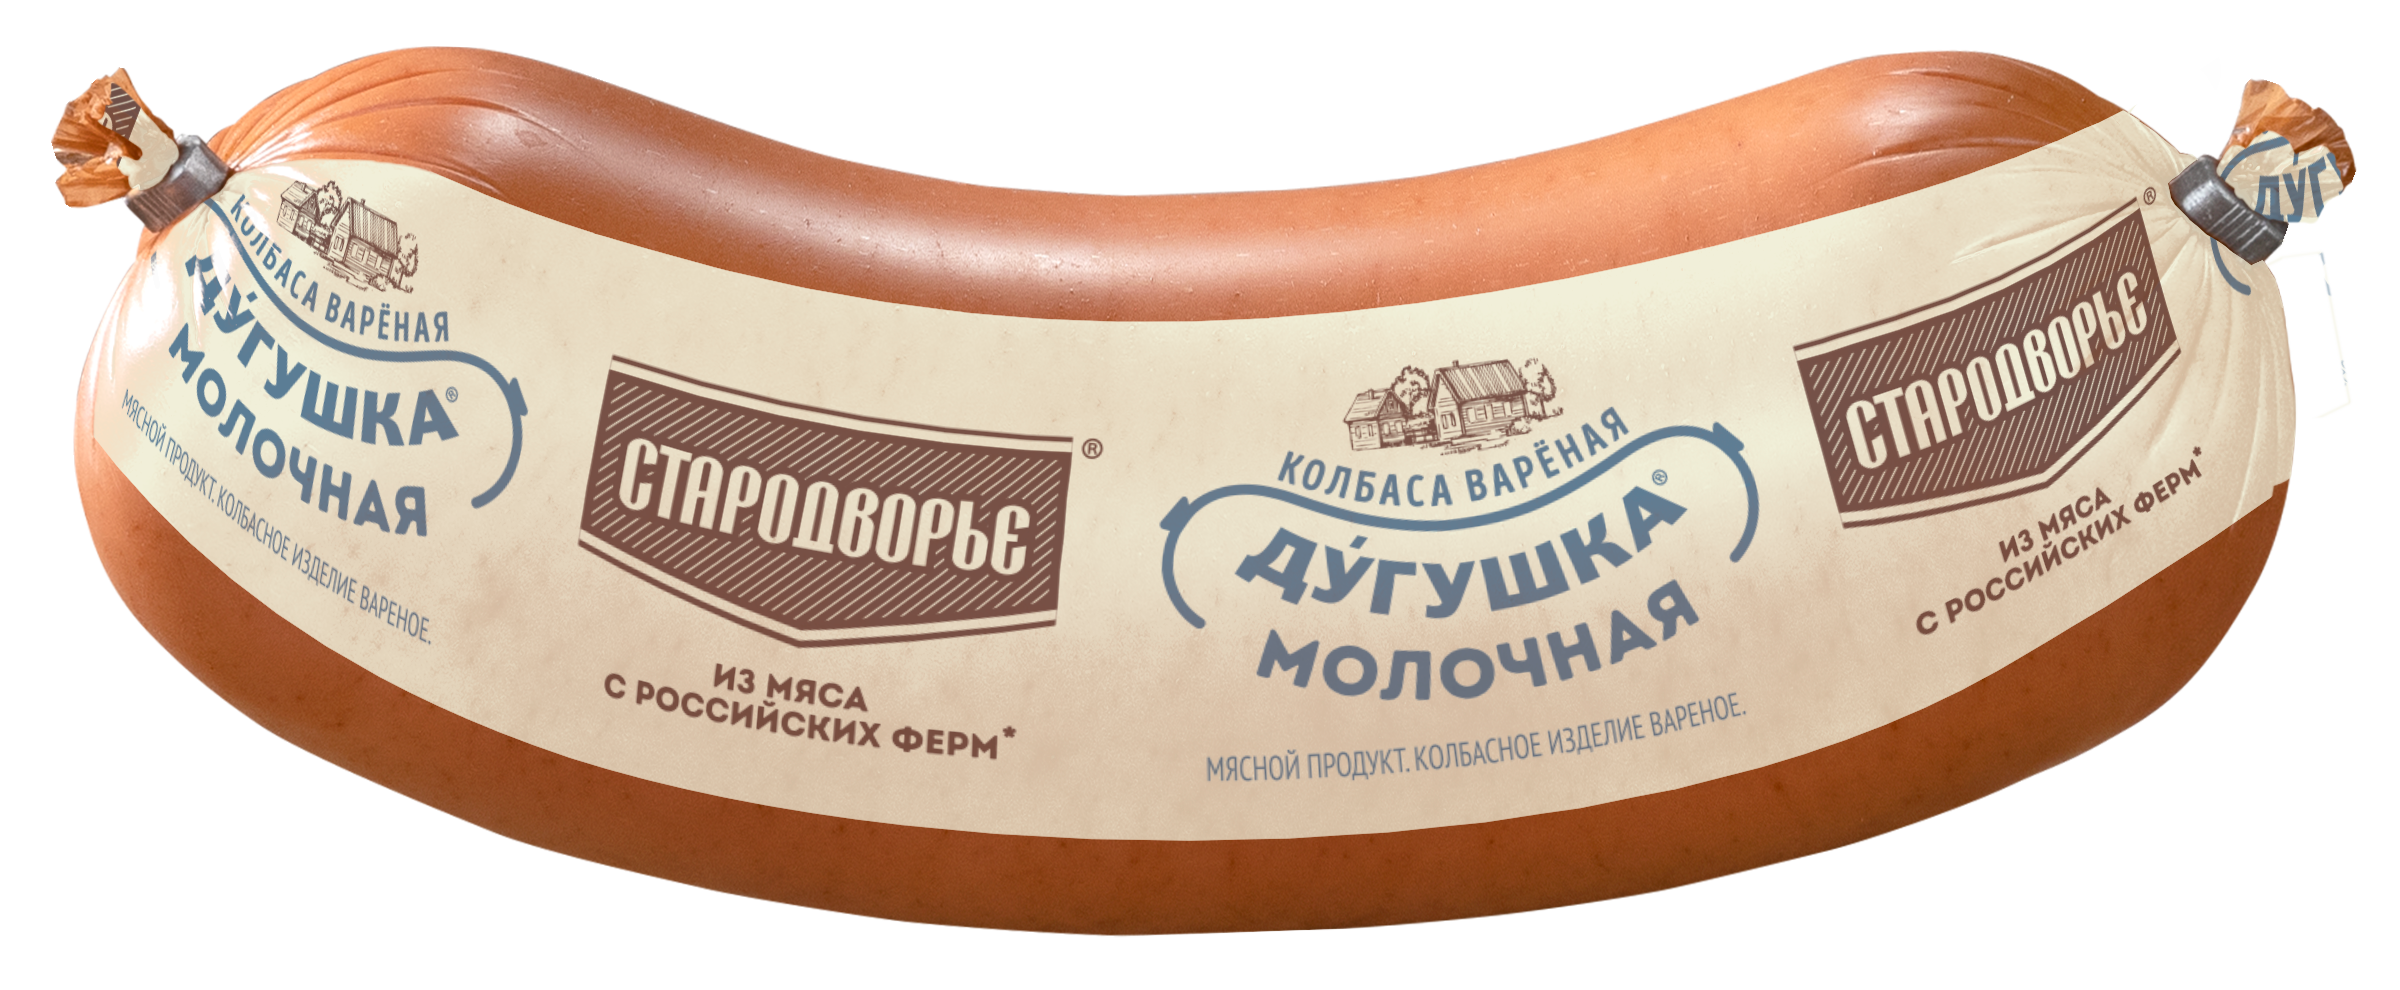 Колбаса варёная Стародворье Дугушка молочная, 600 г